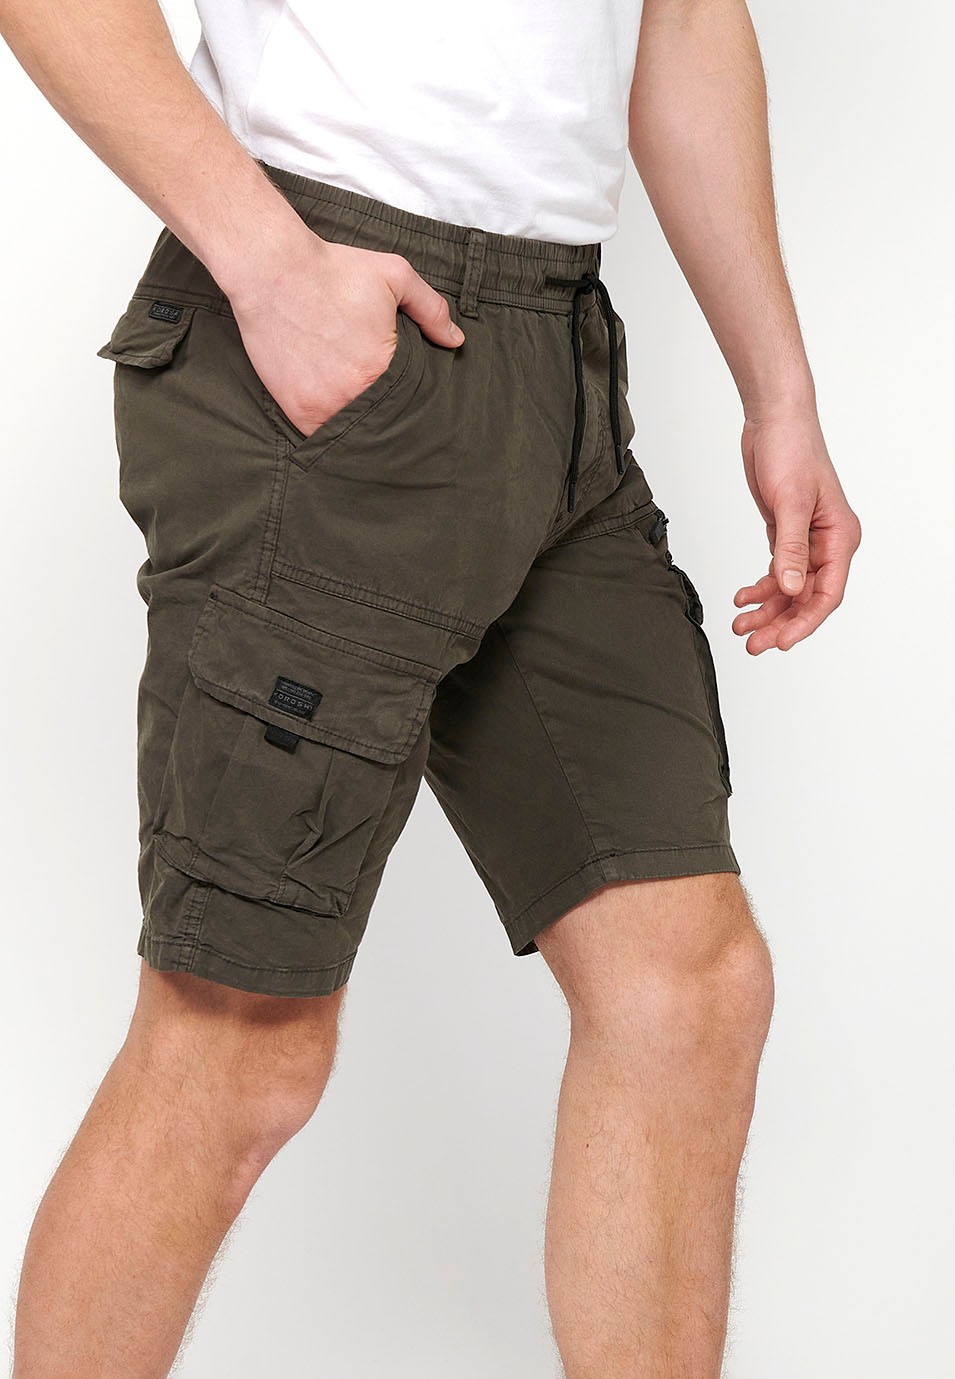 Pantalons curts càrrec amb Butxaques laterals amb solapa i Tancament davanter amb cremallera i botó Color Oliva per a Home